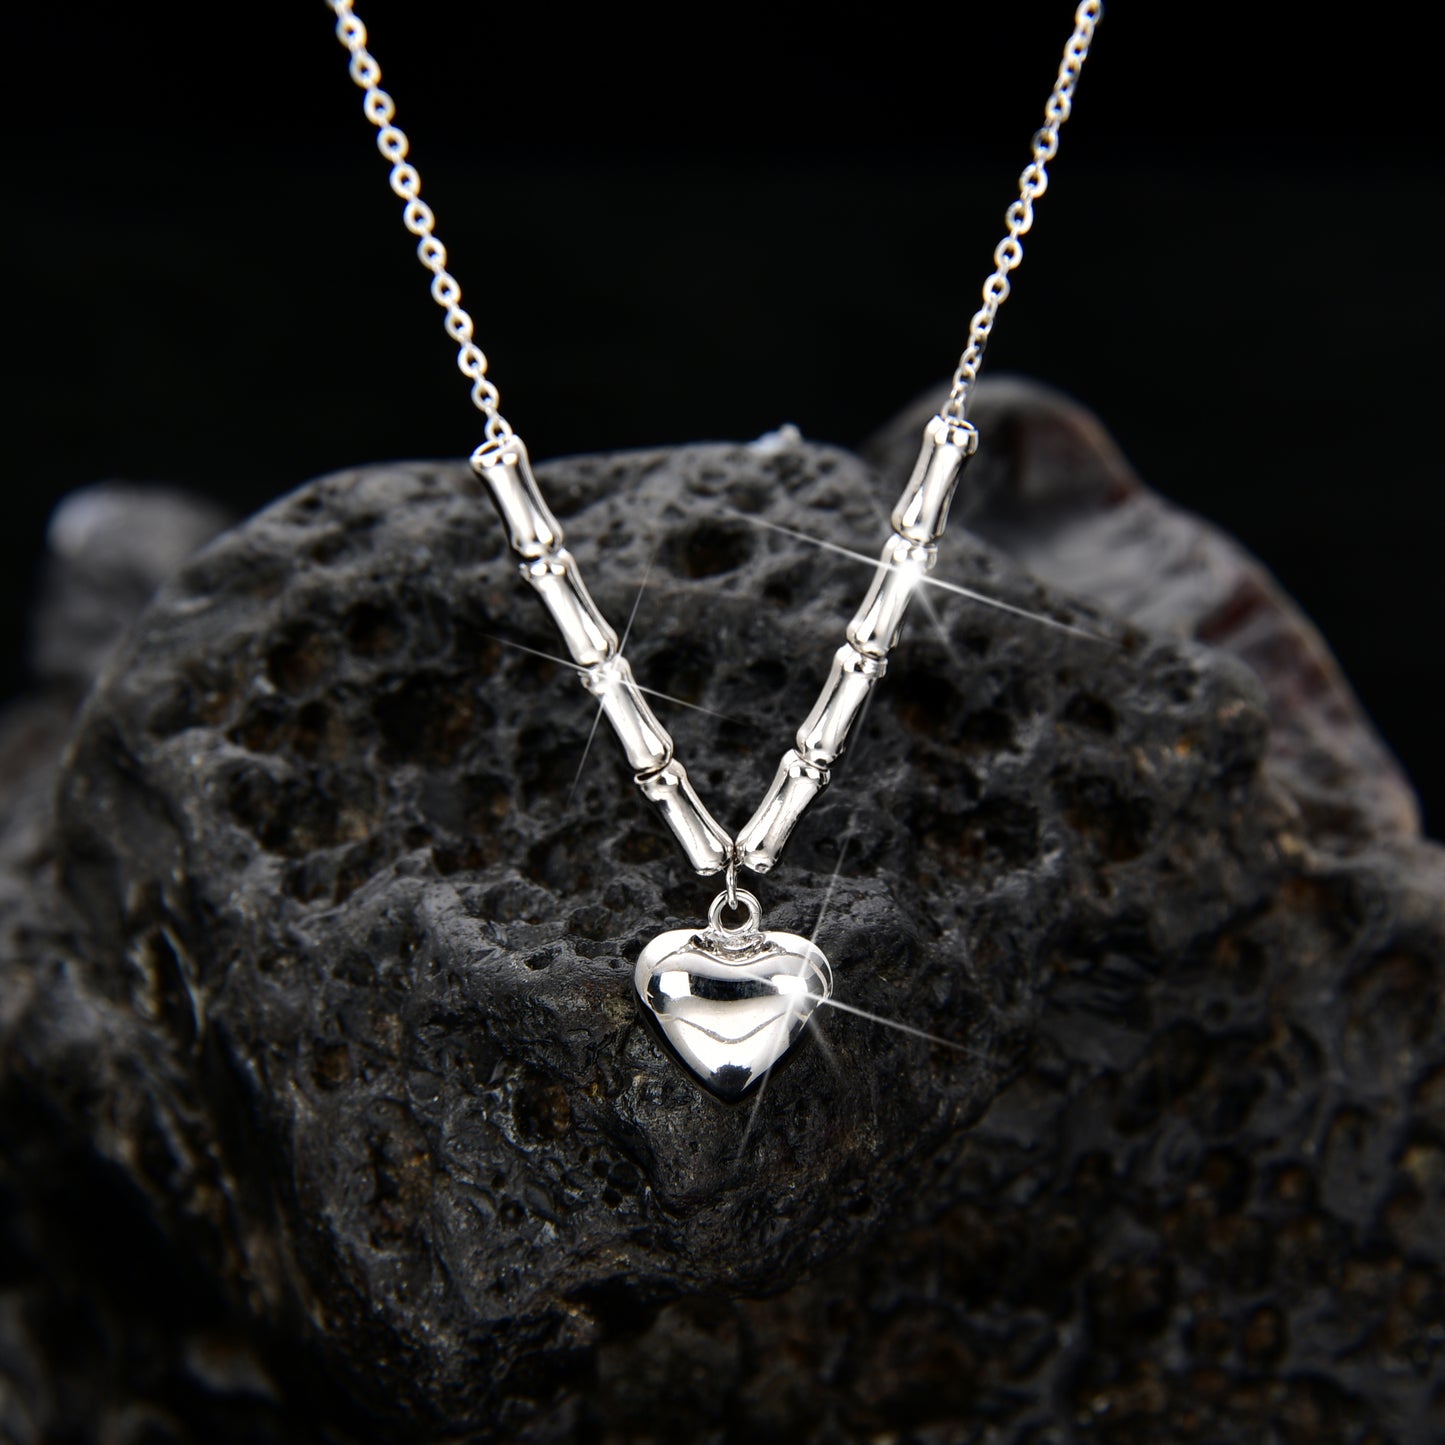 Heart necklace-Women's Jewelry🎁心形项链🎁